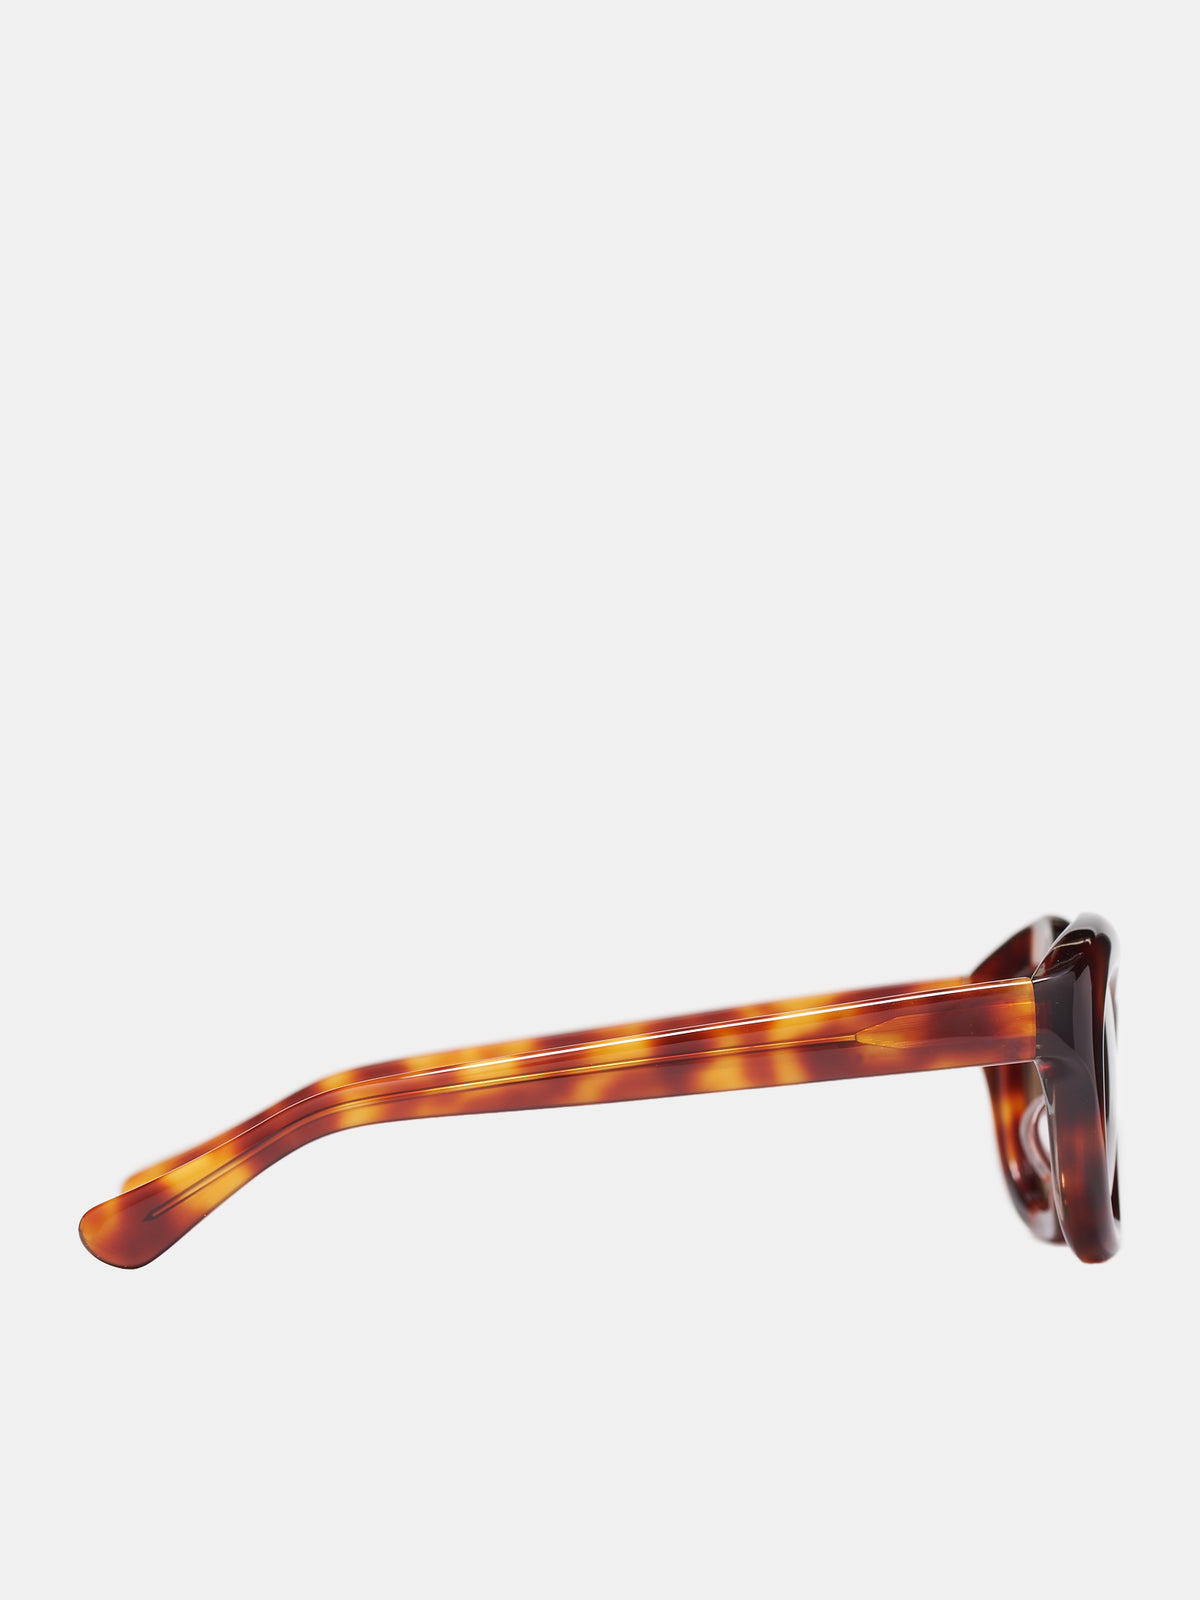 Hook Sunglasses (HOOK-ORANGE-TORTSHELL-BROWN4)